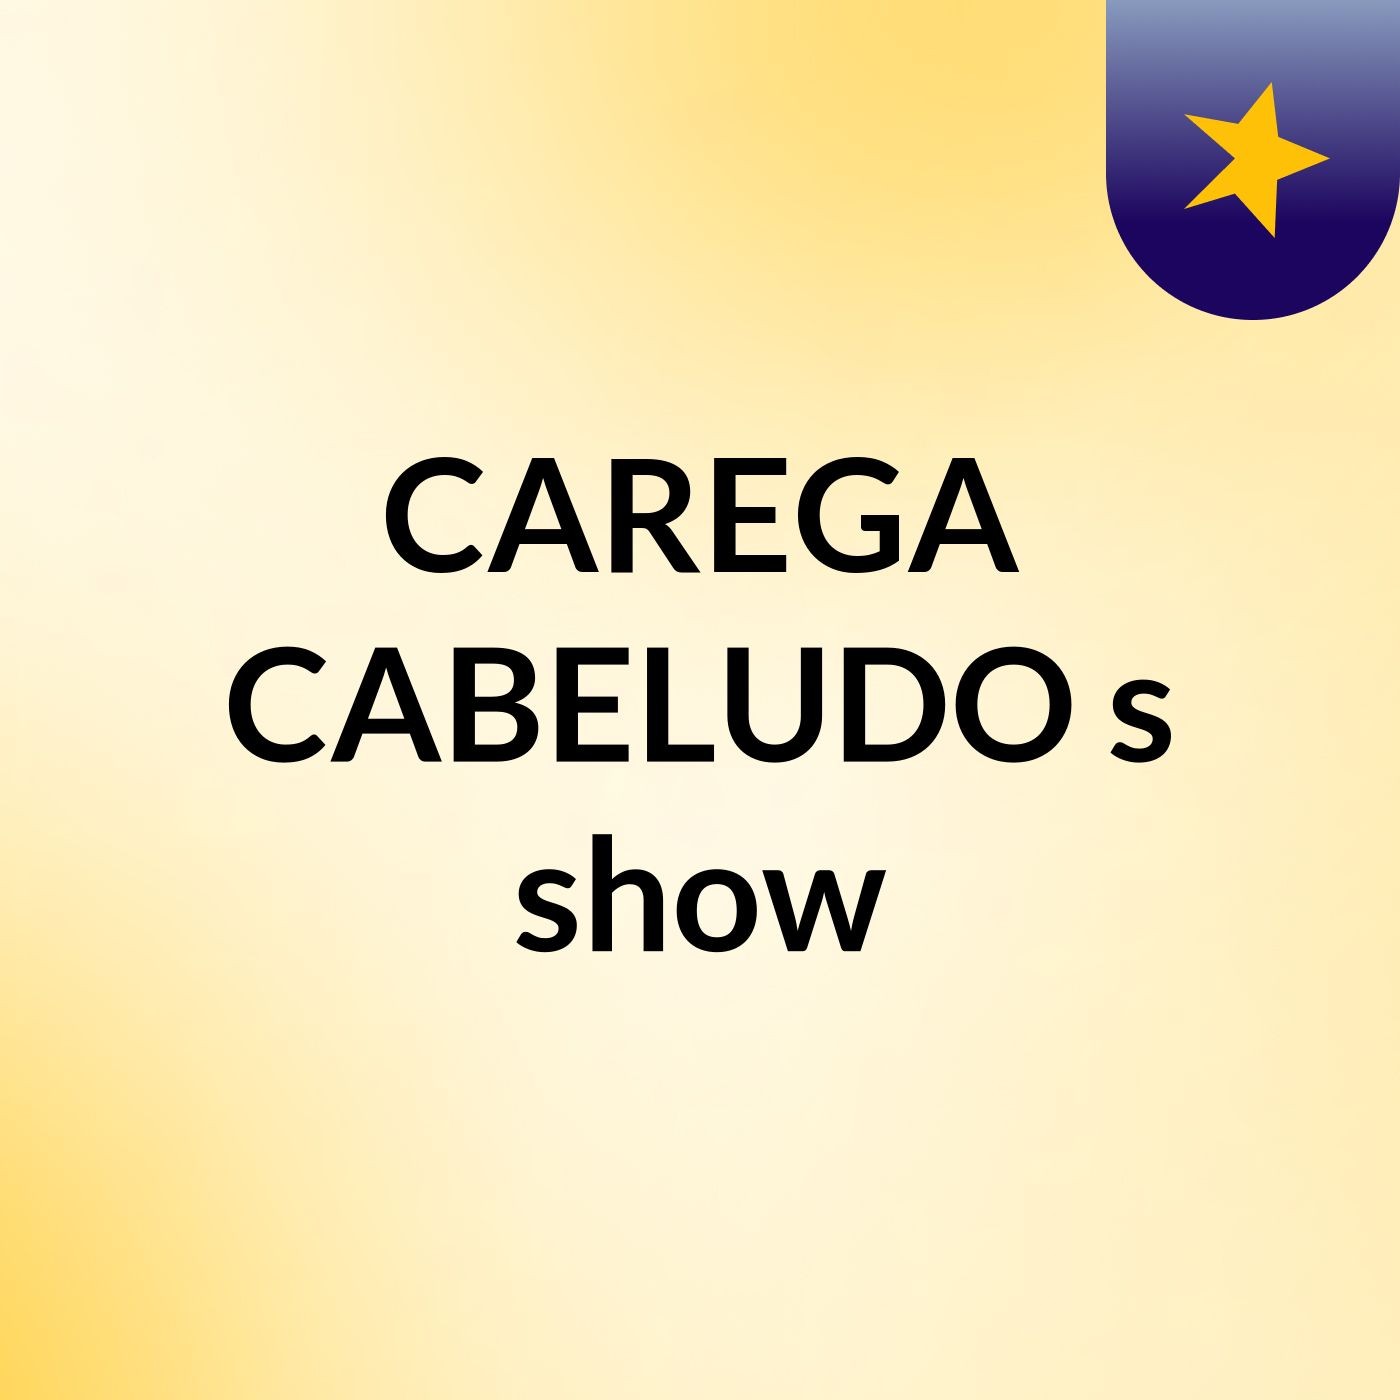 CAREGA CABELUDO's show